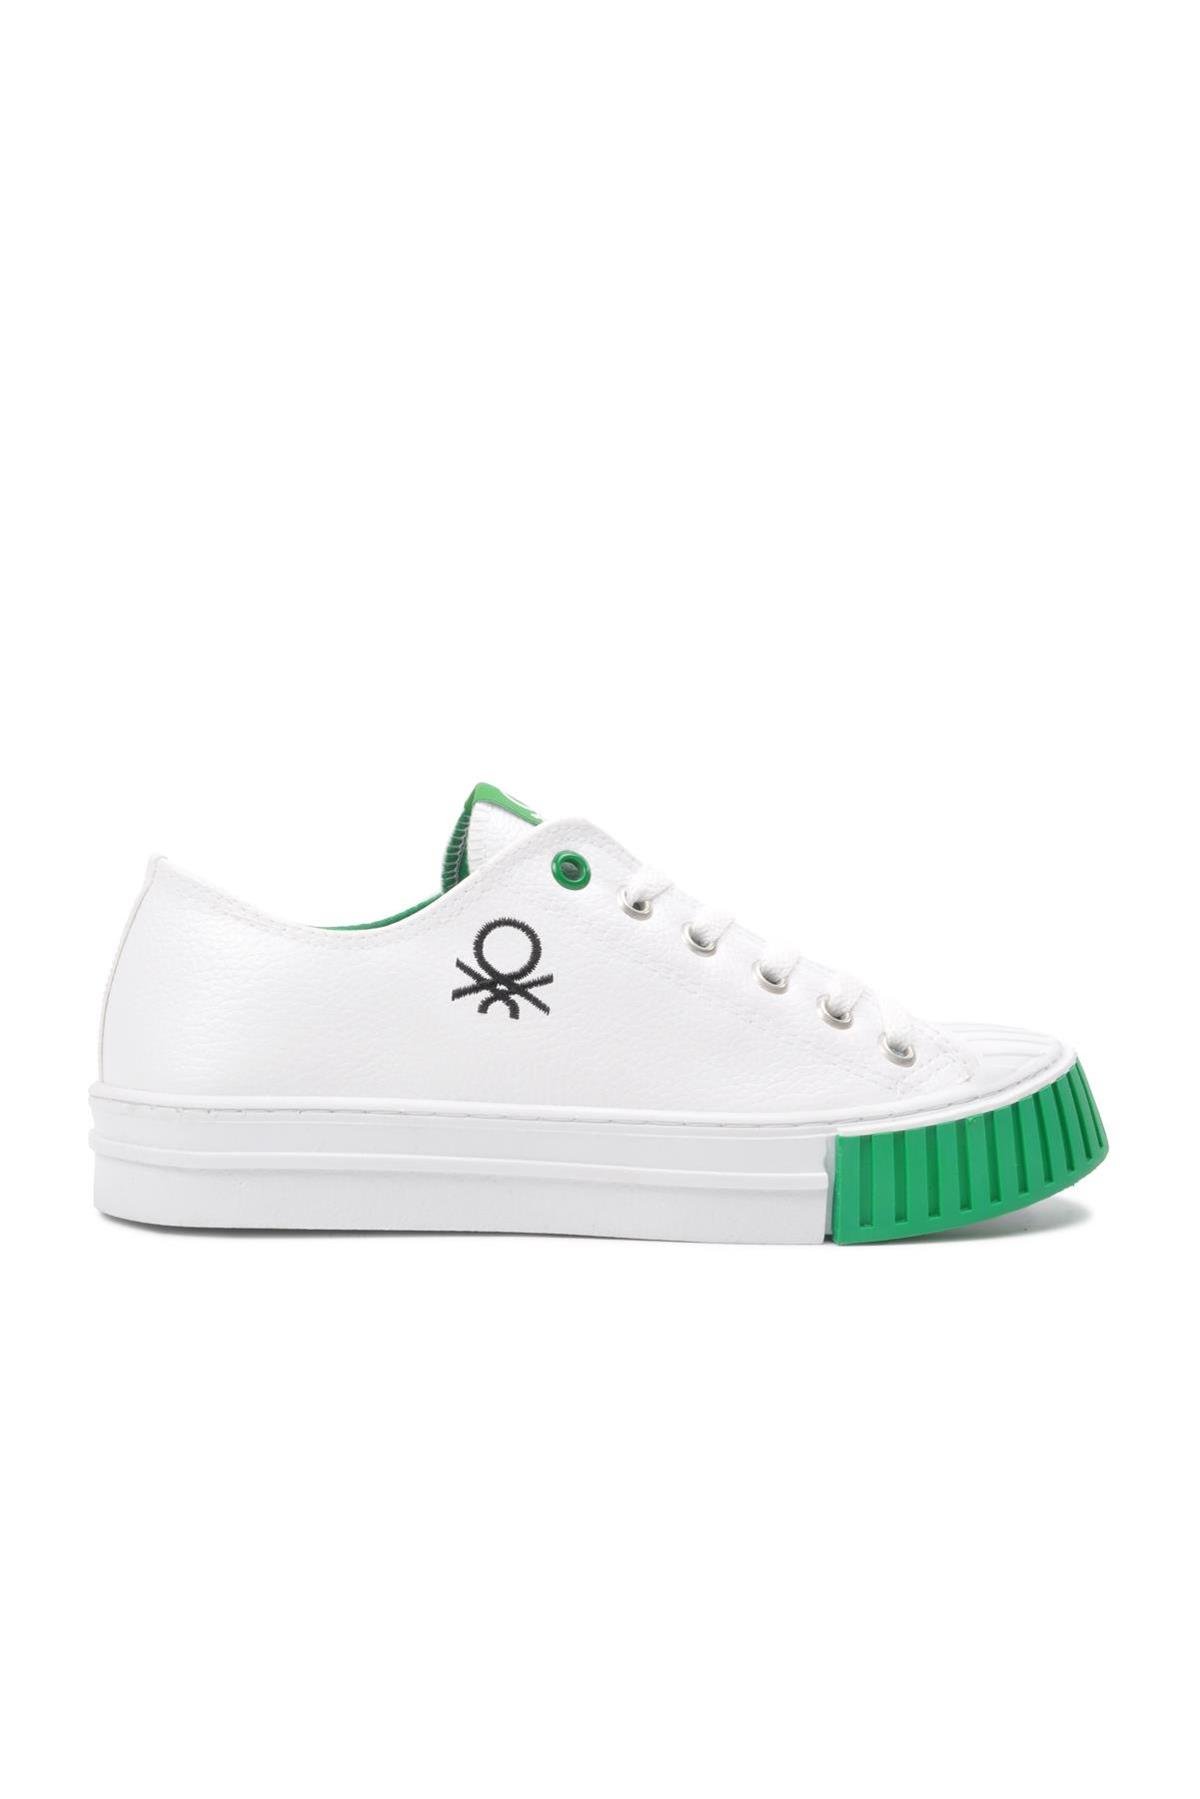 Benetton Bn-30546 Beyaz-Yeşil Erkek Sneaker - Ayakmod